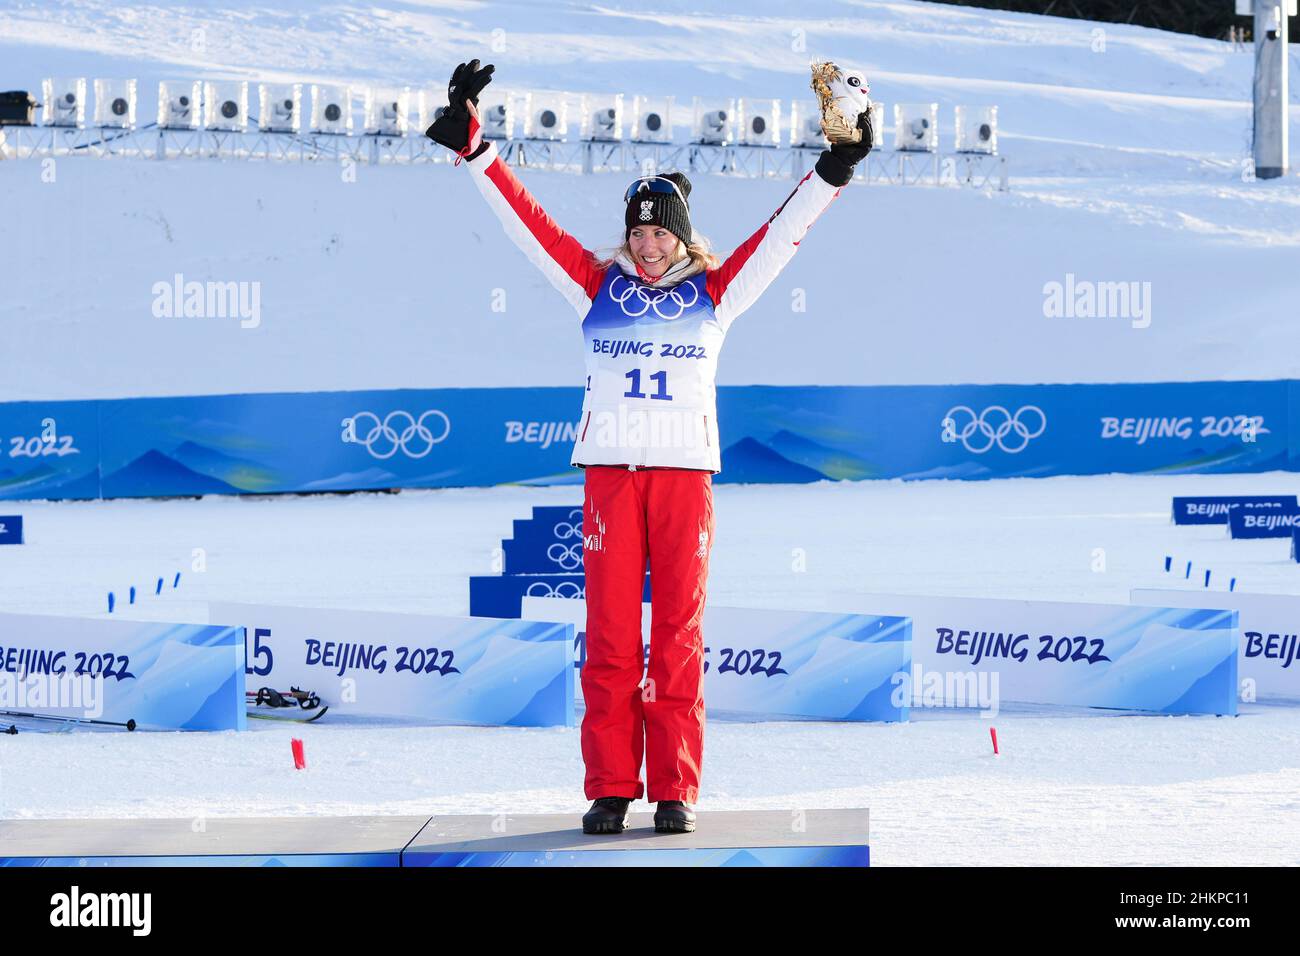 Podium, Teresa Stadlober (AUT) Médaille de bronze lors des Jeux Olympiques d'hiver Beijing 2022, ski de fond, femmes 7,5km + 7,5km Skiathlon le 5 février 2022 au Parc de neige de Genting à Zhangjiakou, province de Hebei en Chine - photo: Osports/DPPI/LiveMedia Banque D'Images